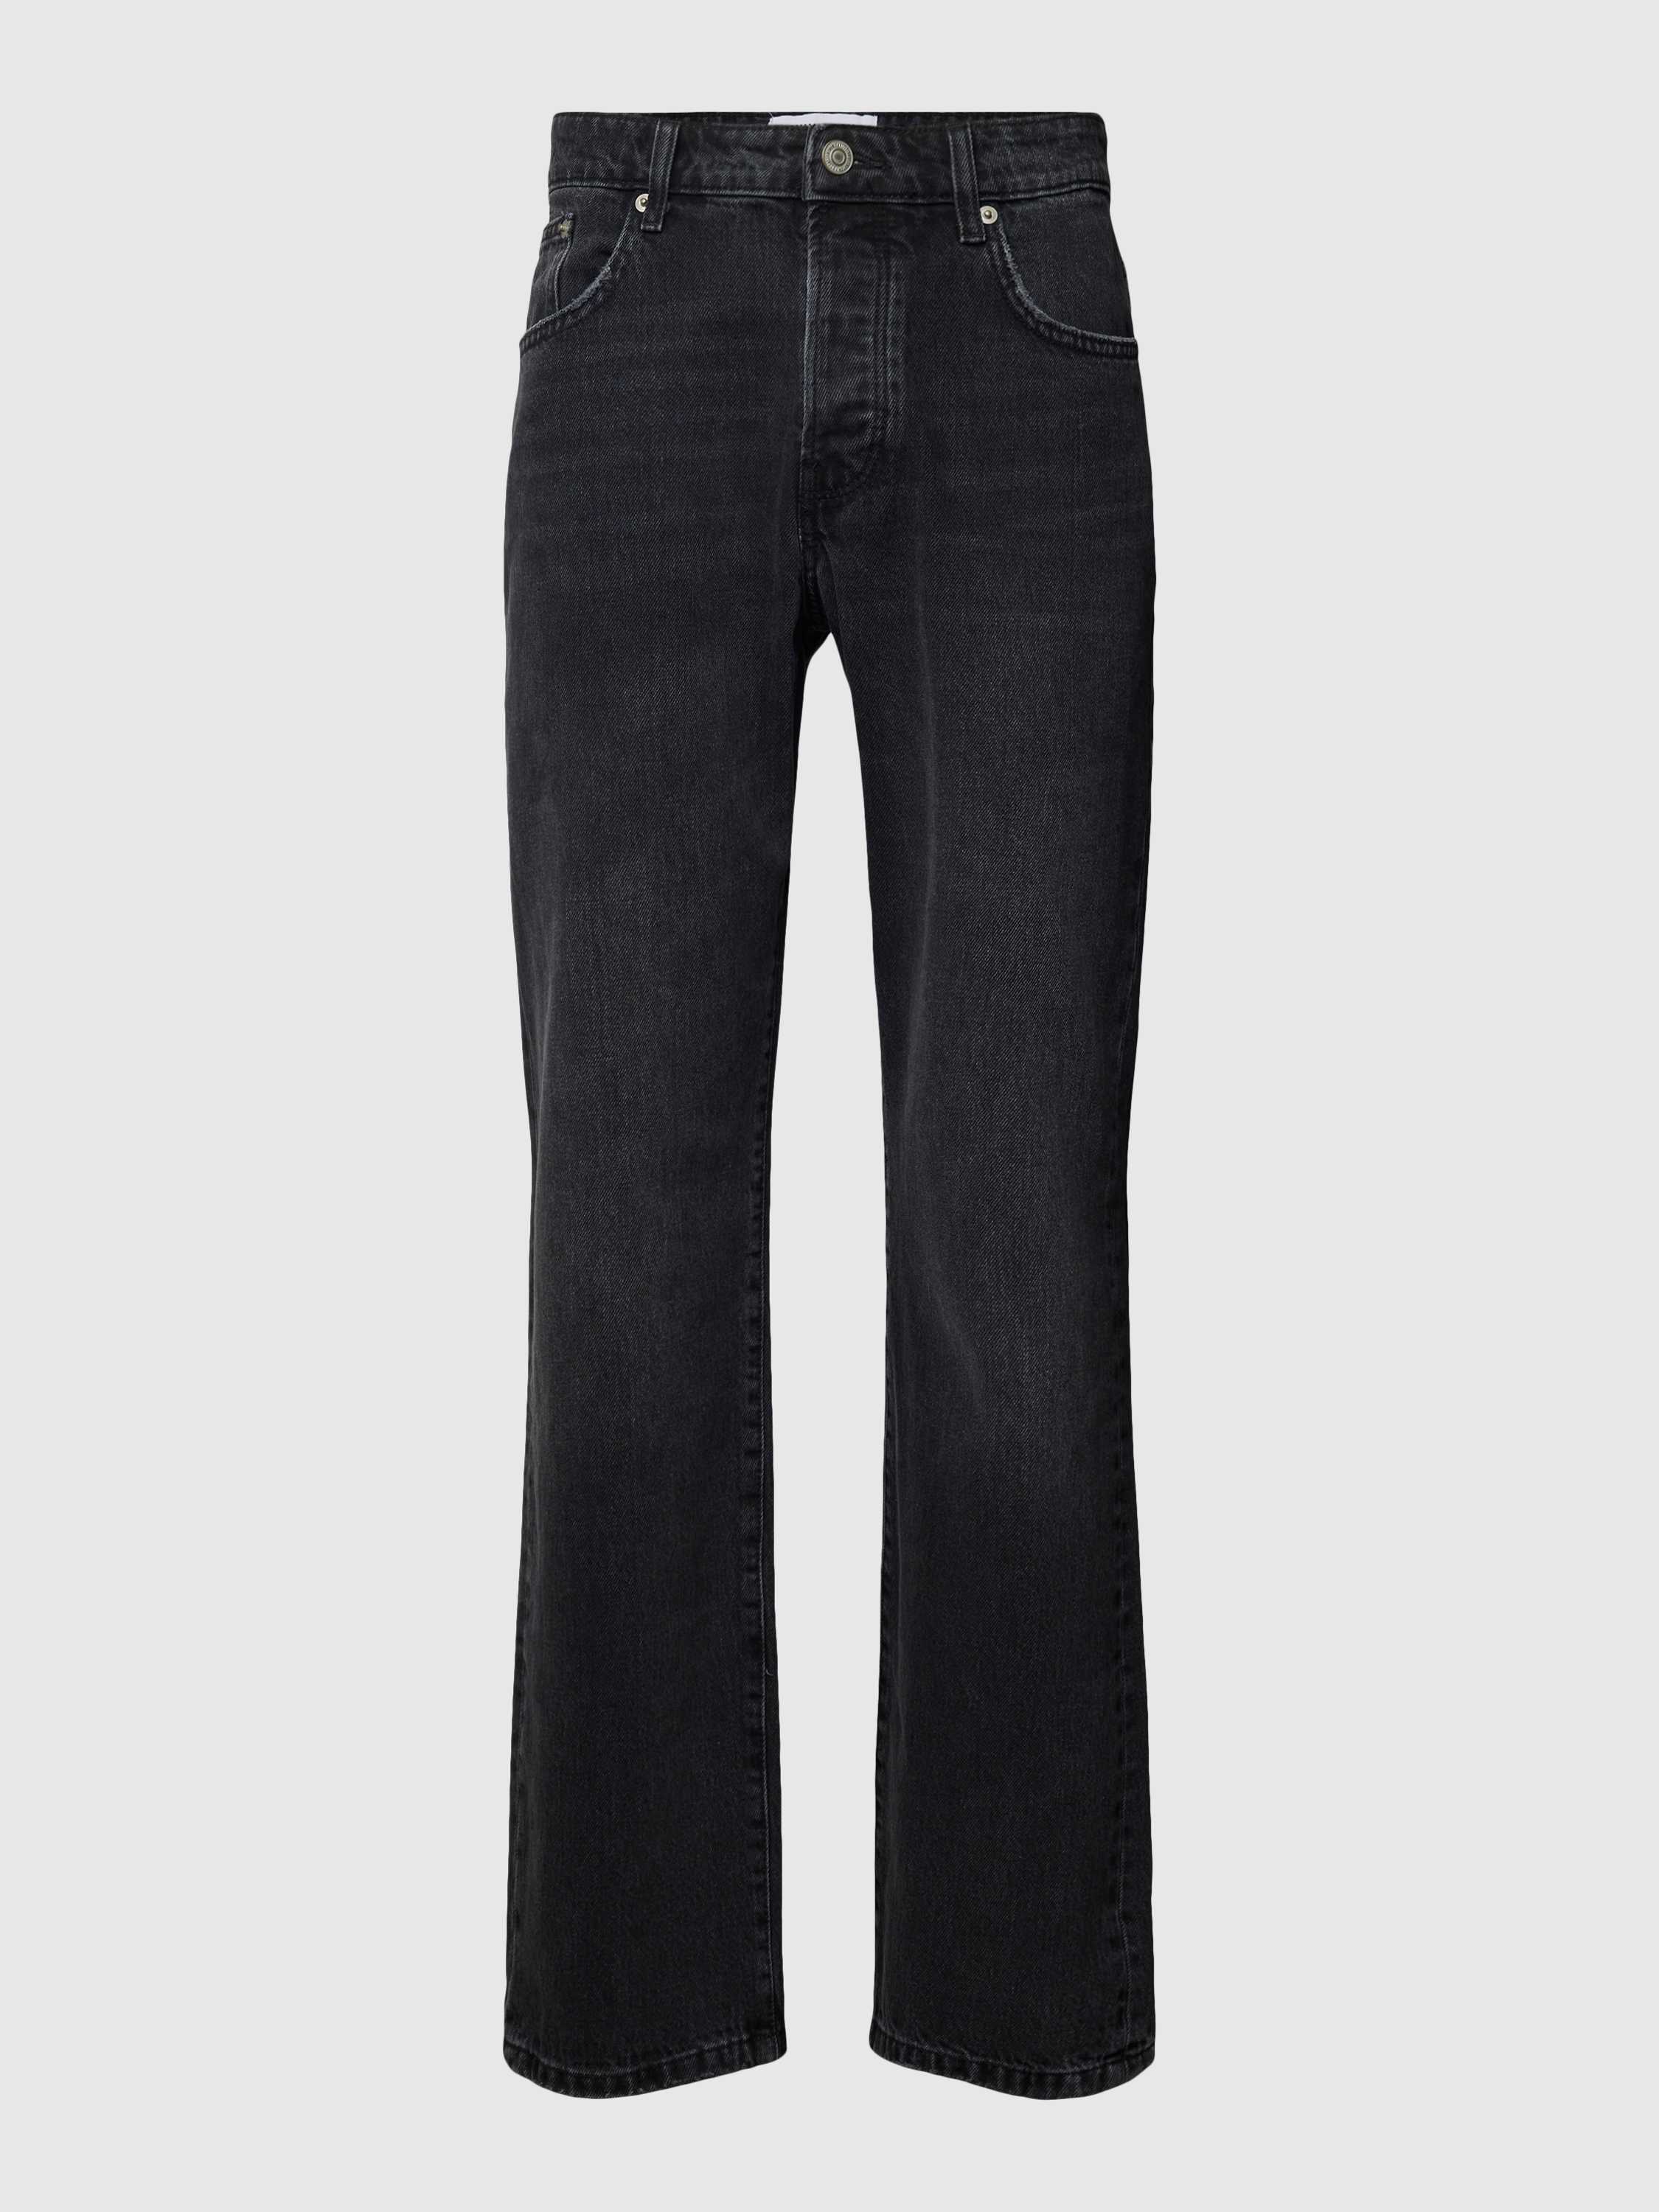 Bootcut Jeans im 5-Pocket-Design Modell 'EDGE'